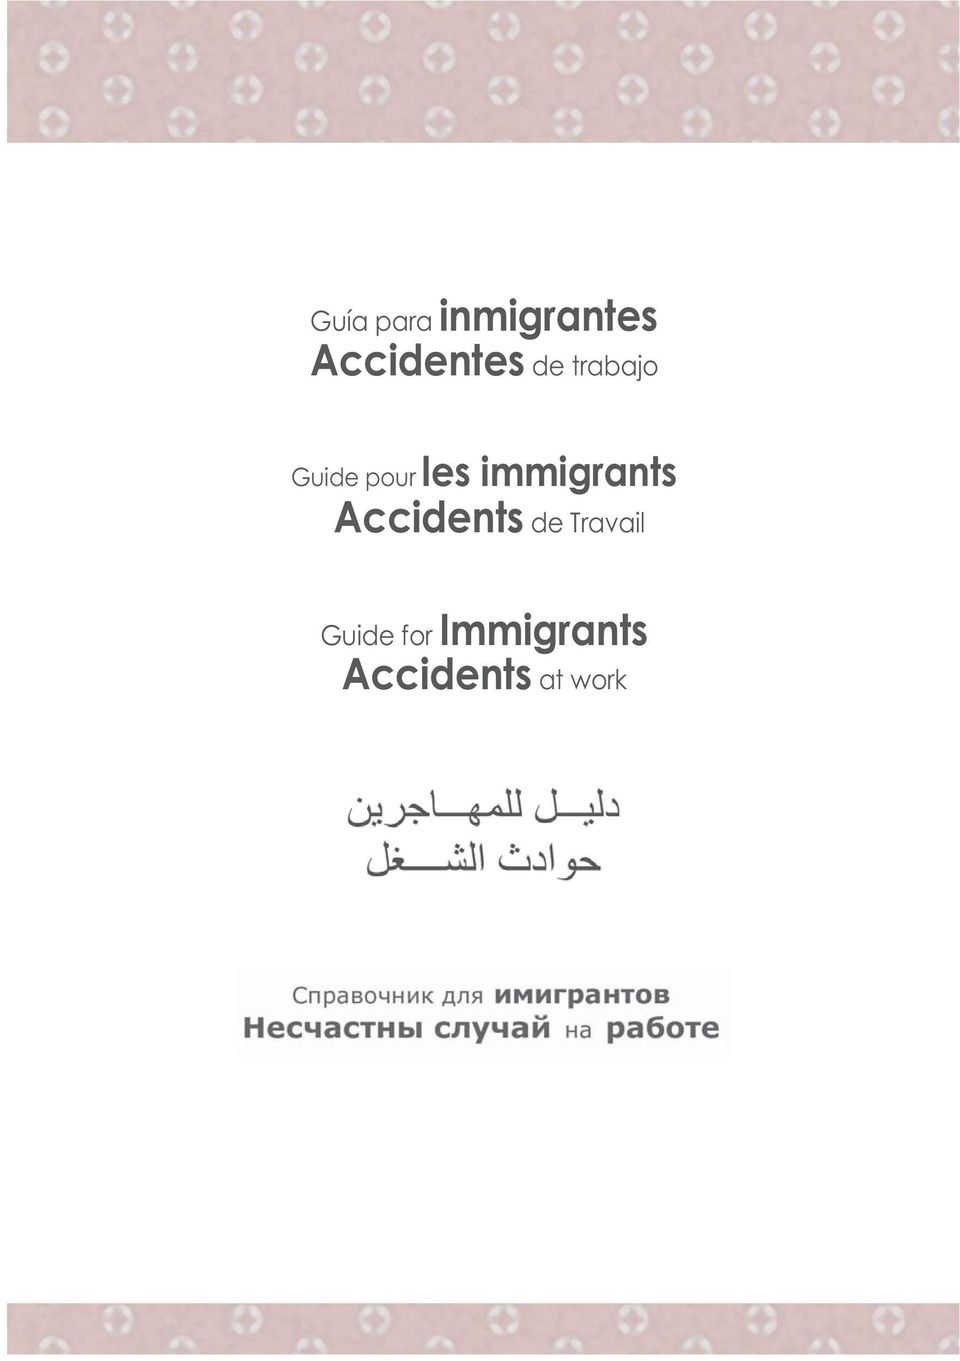 immigrants Accidents de Travail